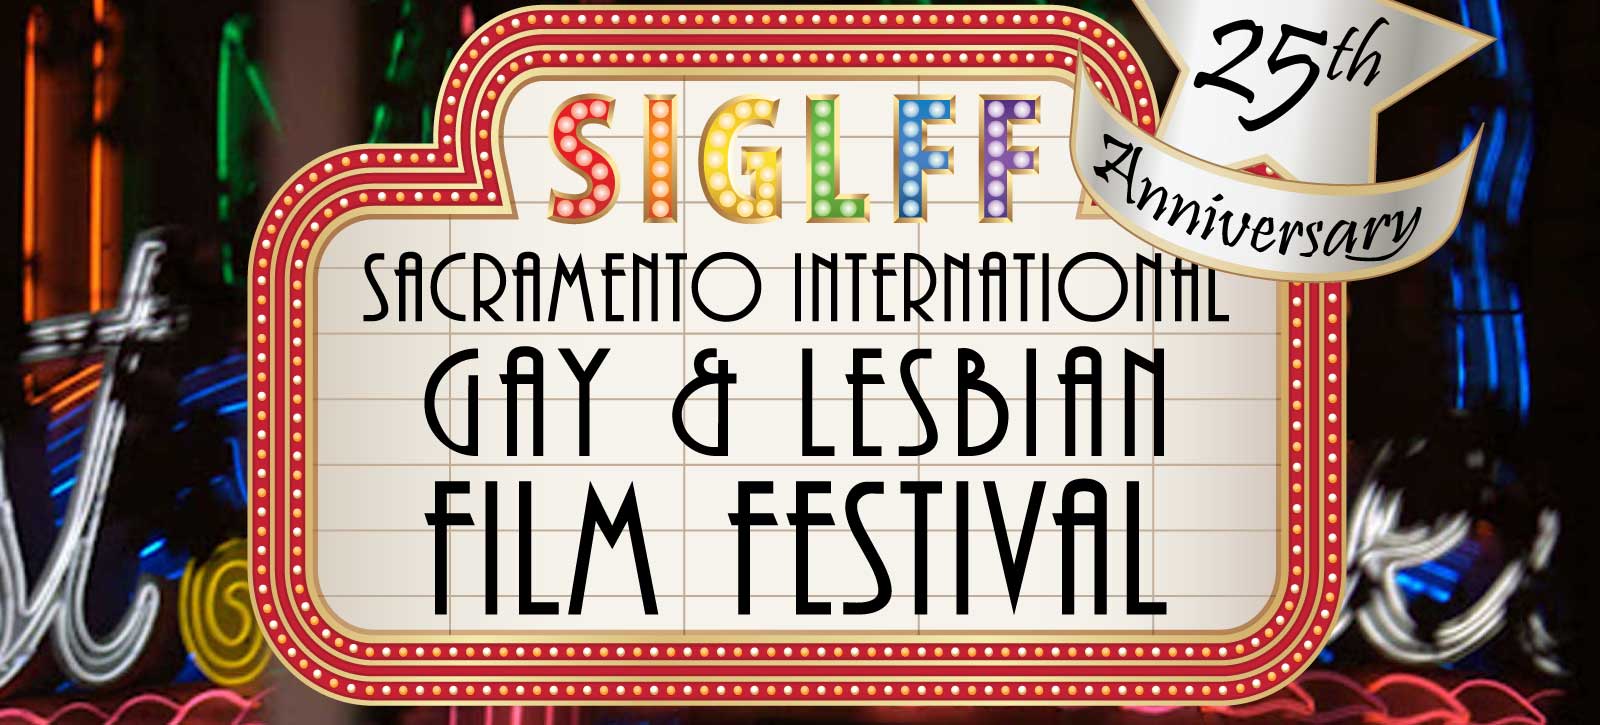 Sacramento International Gay & Lesbian Film Festival